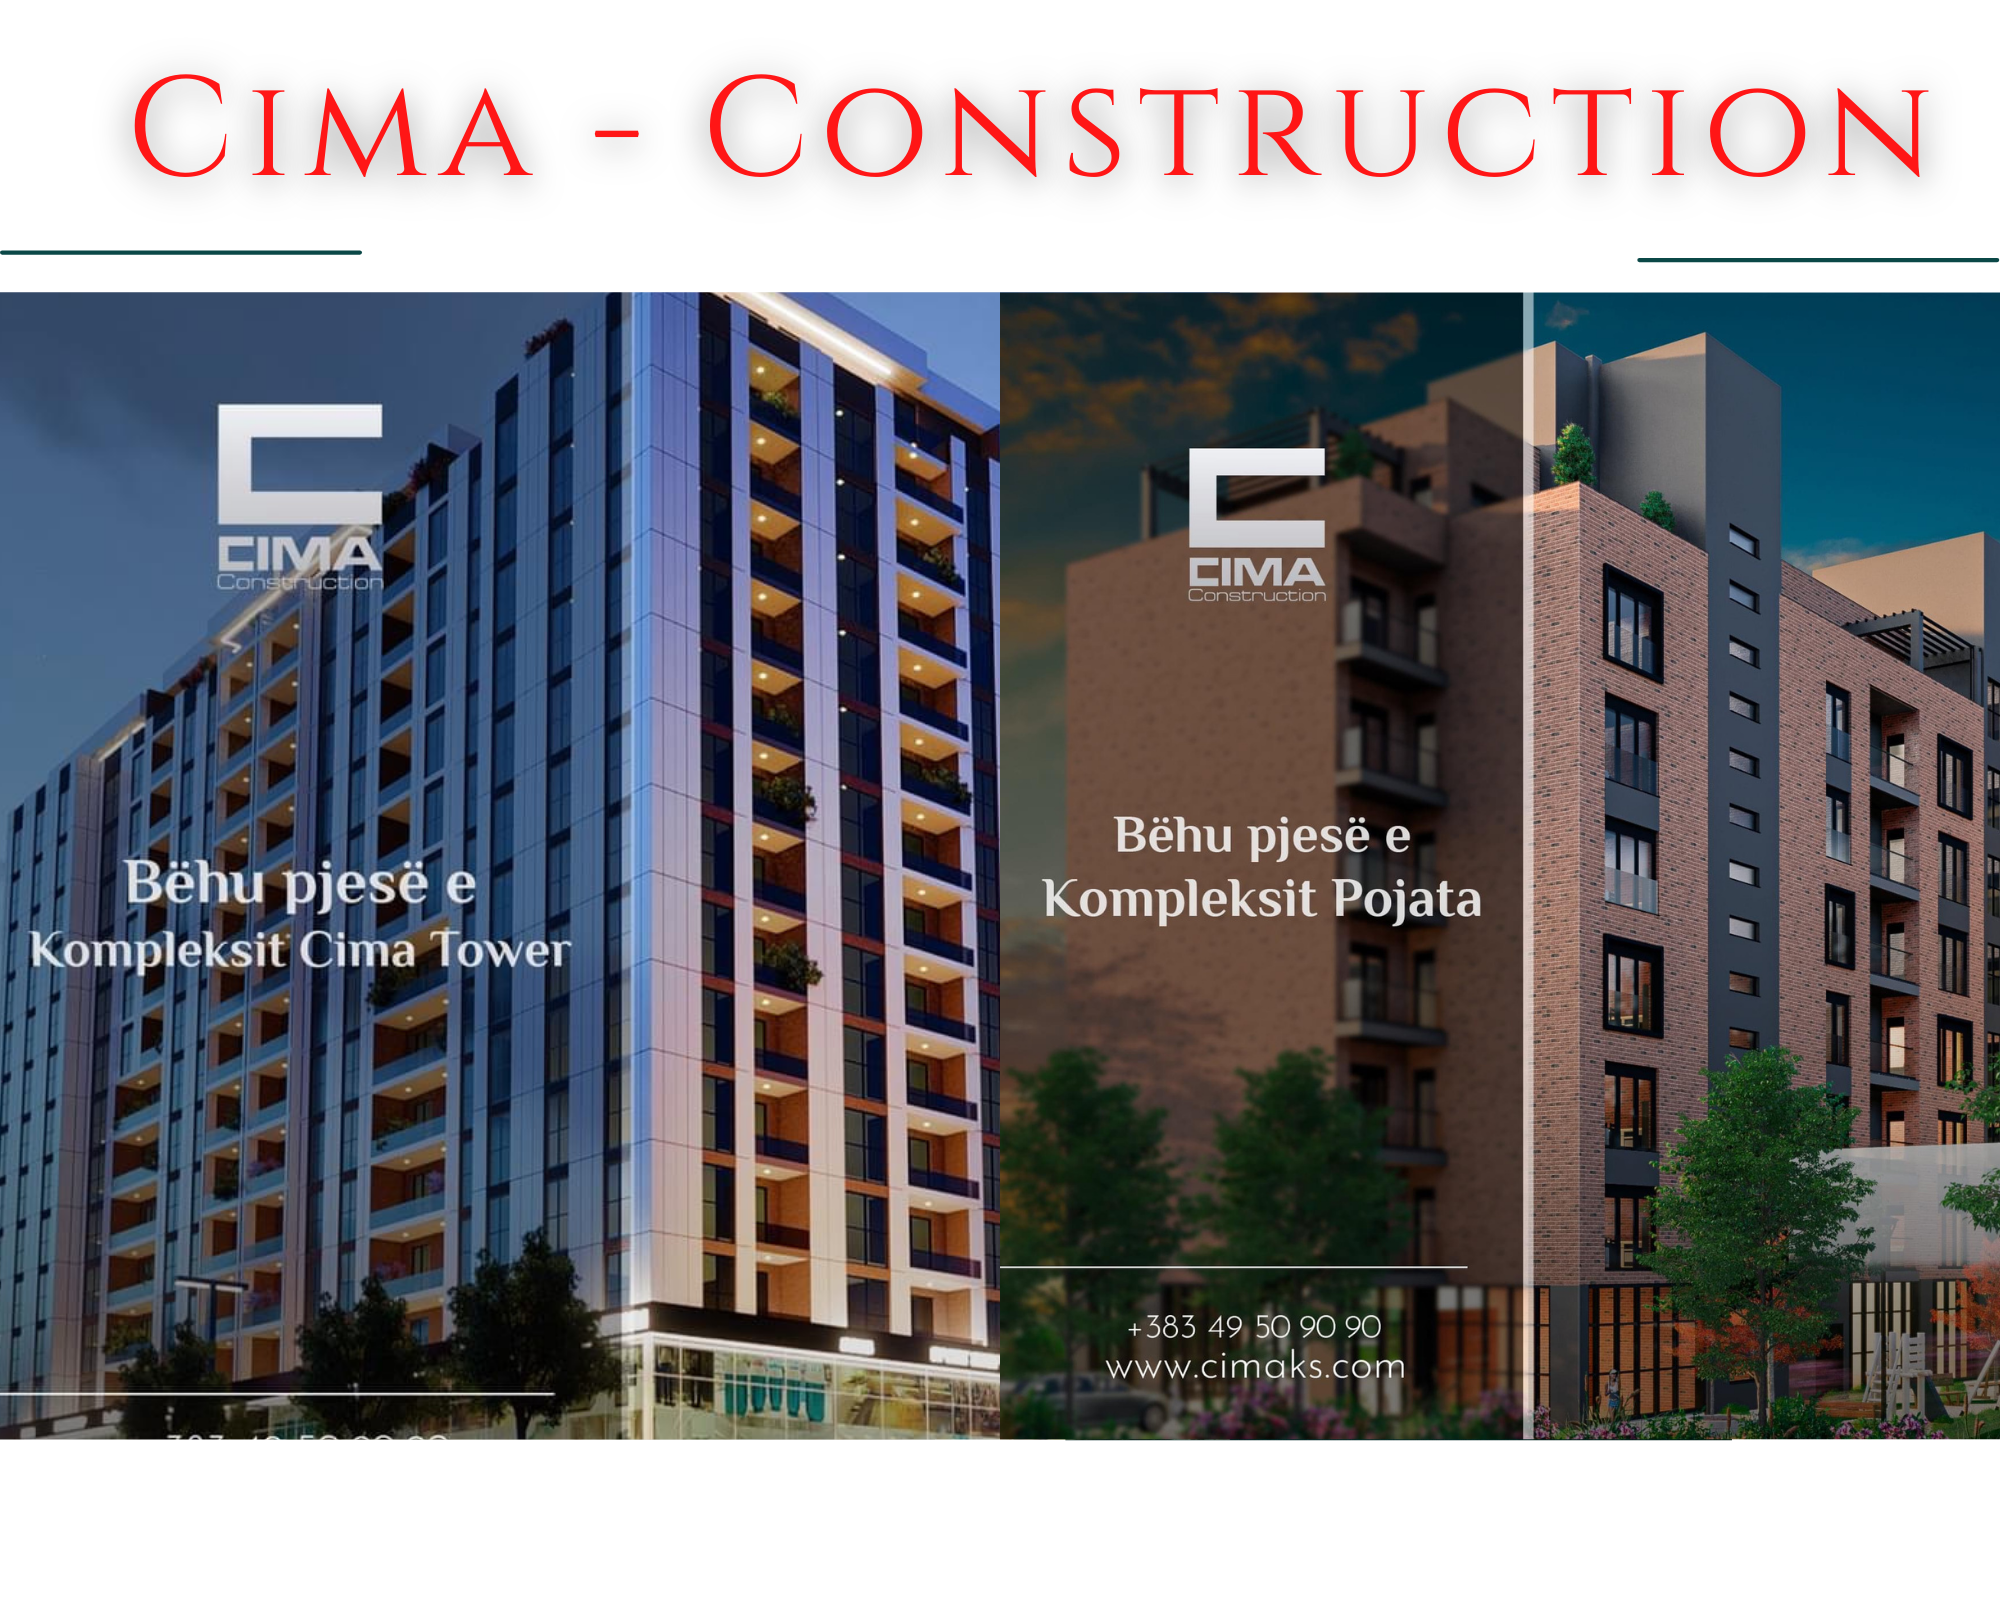 Nise vitin me një banesë të re, “Cima Construction” i’u mundëson blerjen me kushtet më të mira në treg